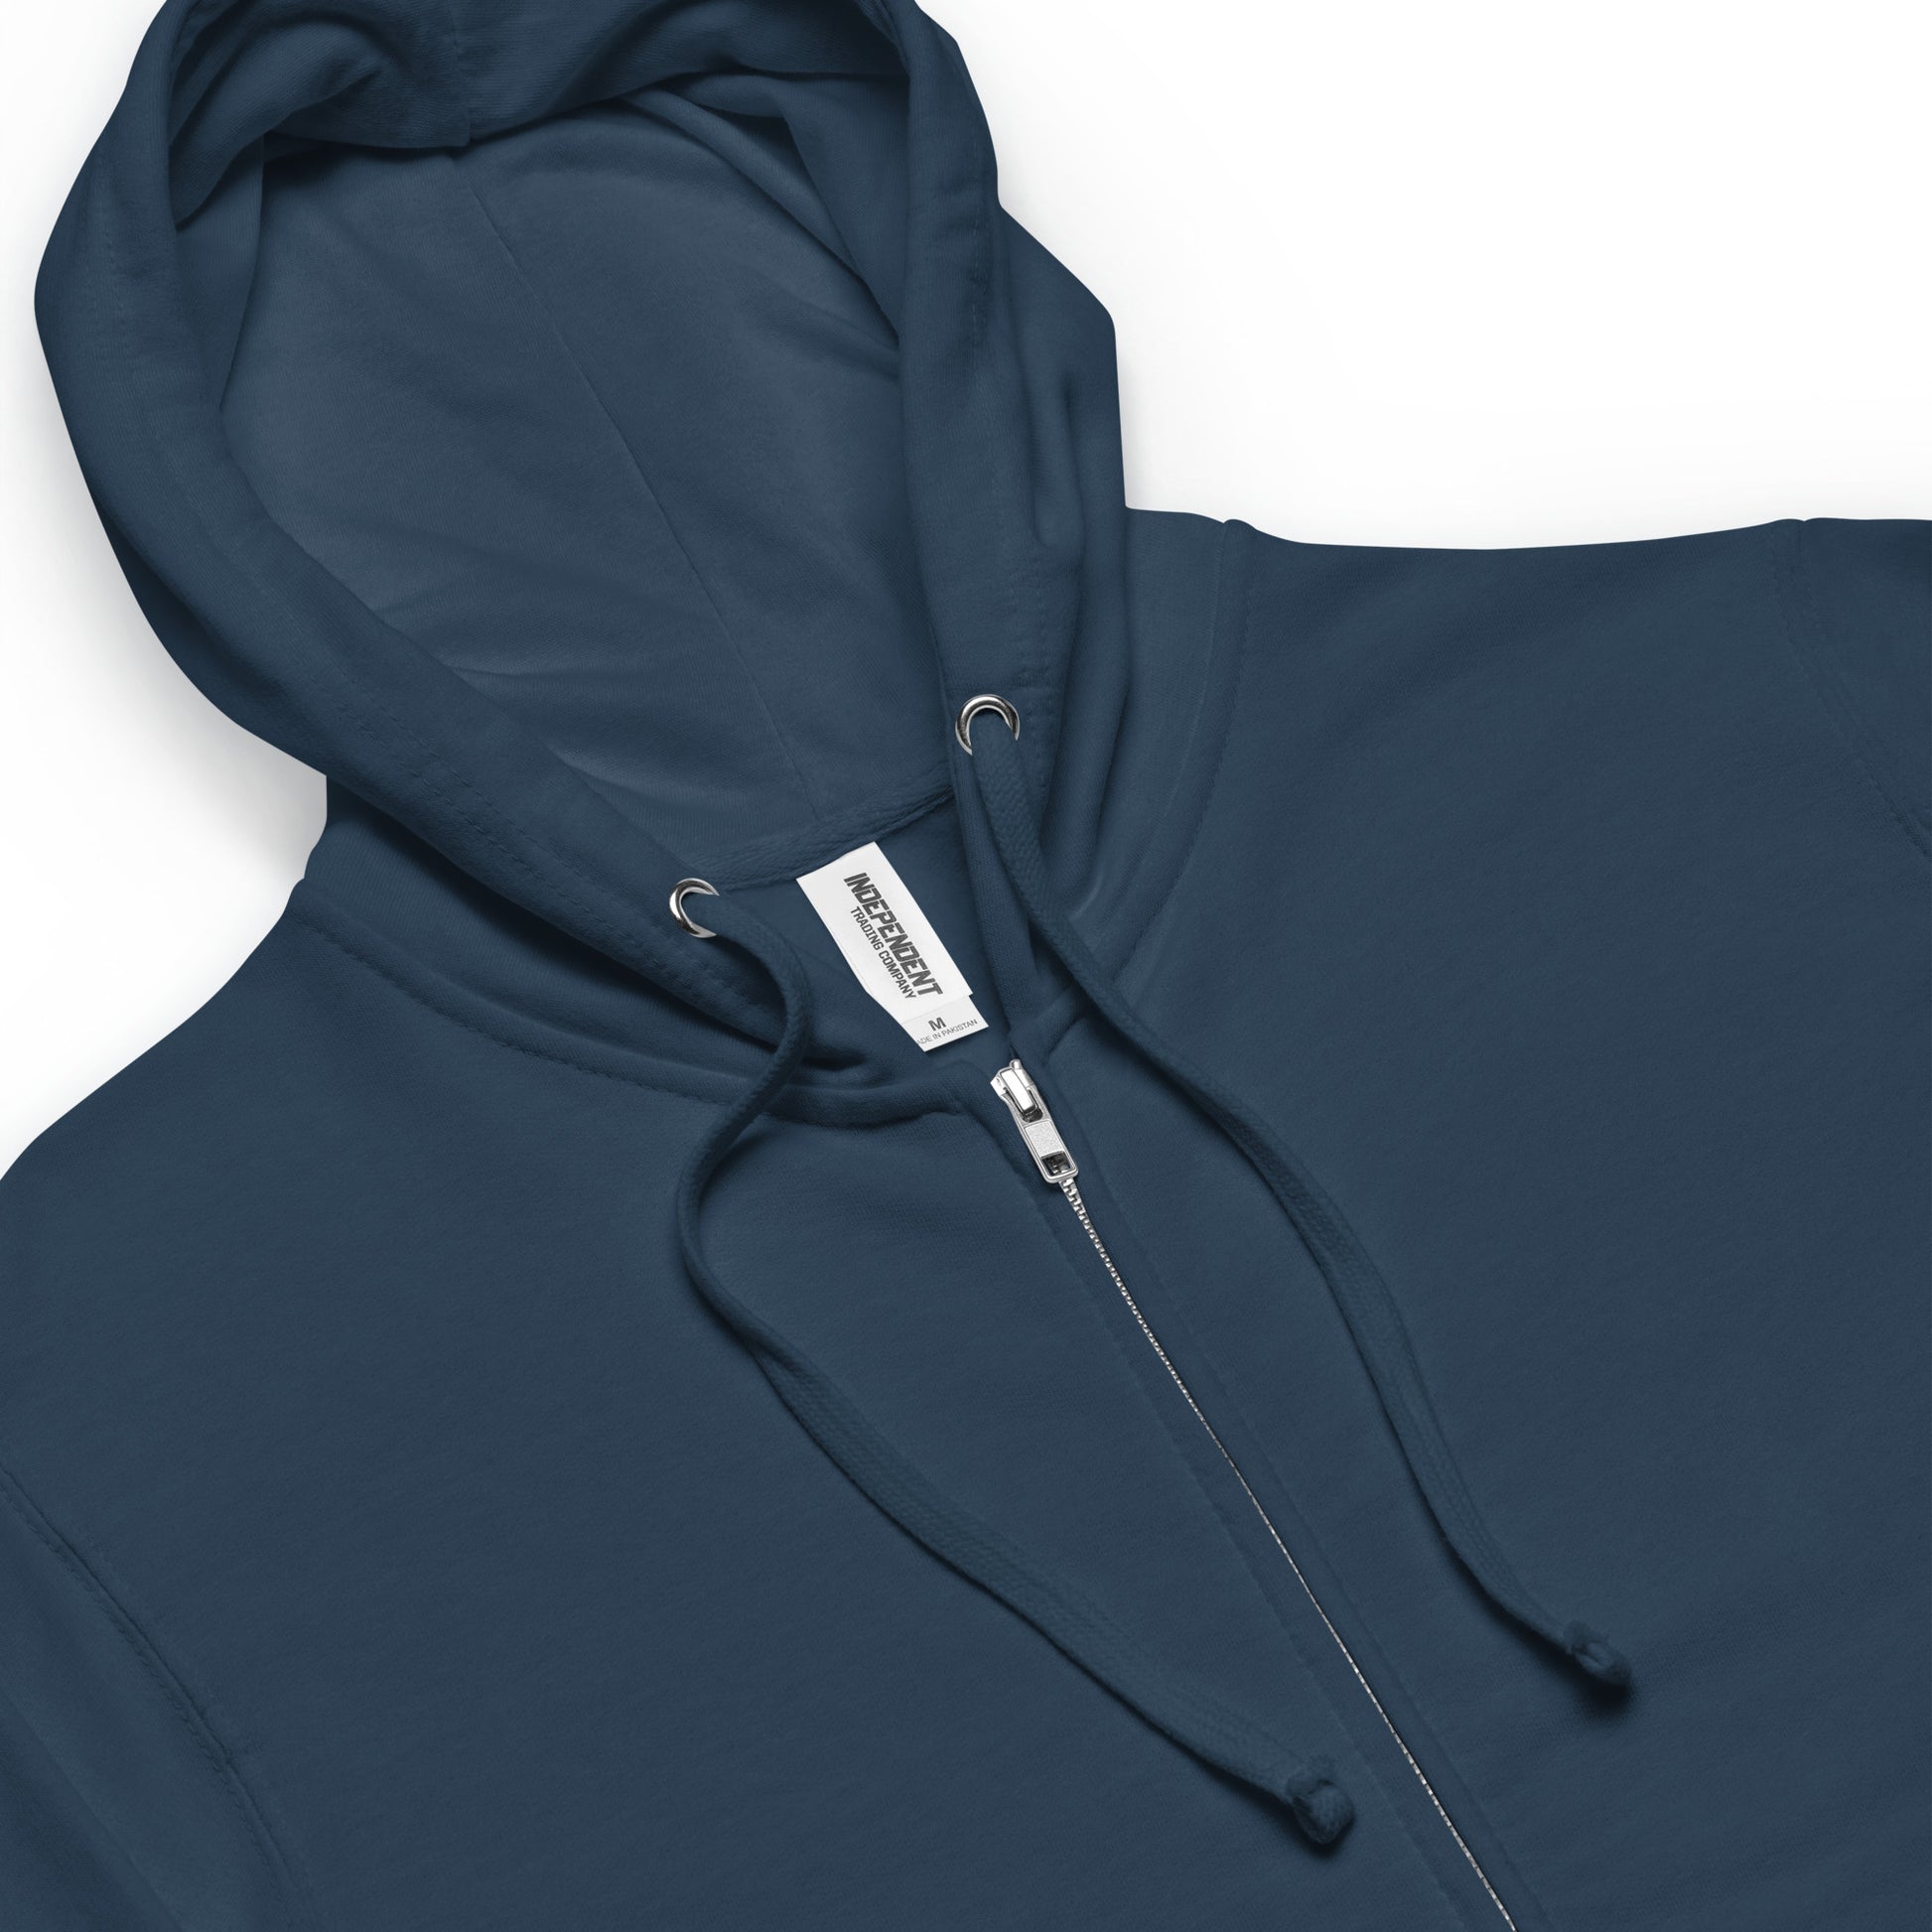 Unisex fleece zip up navy blue hoodie details. metal zipper, lined hood, cords.